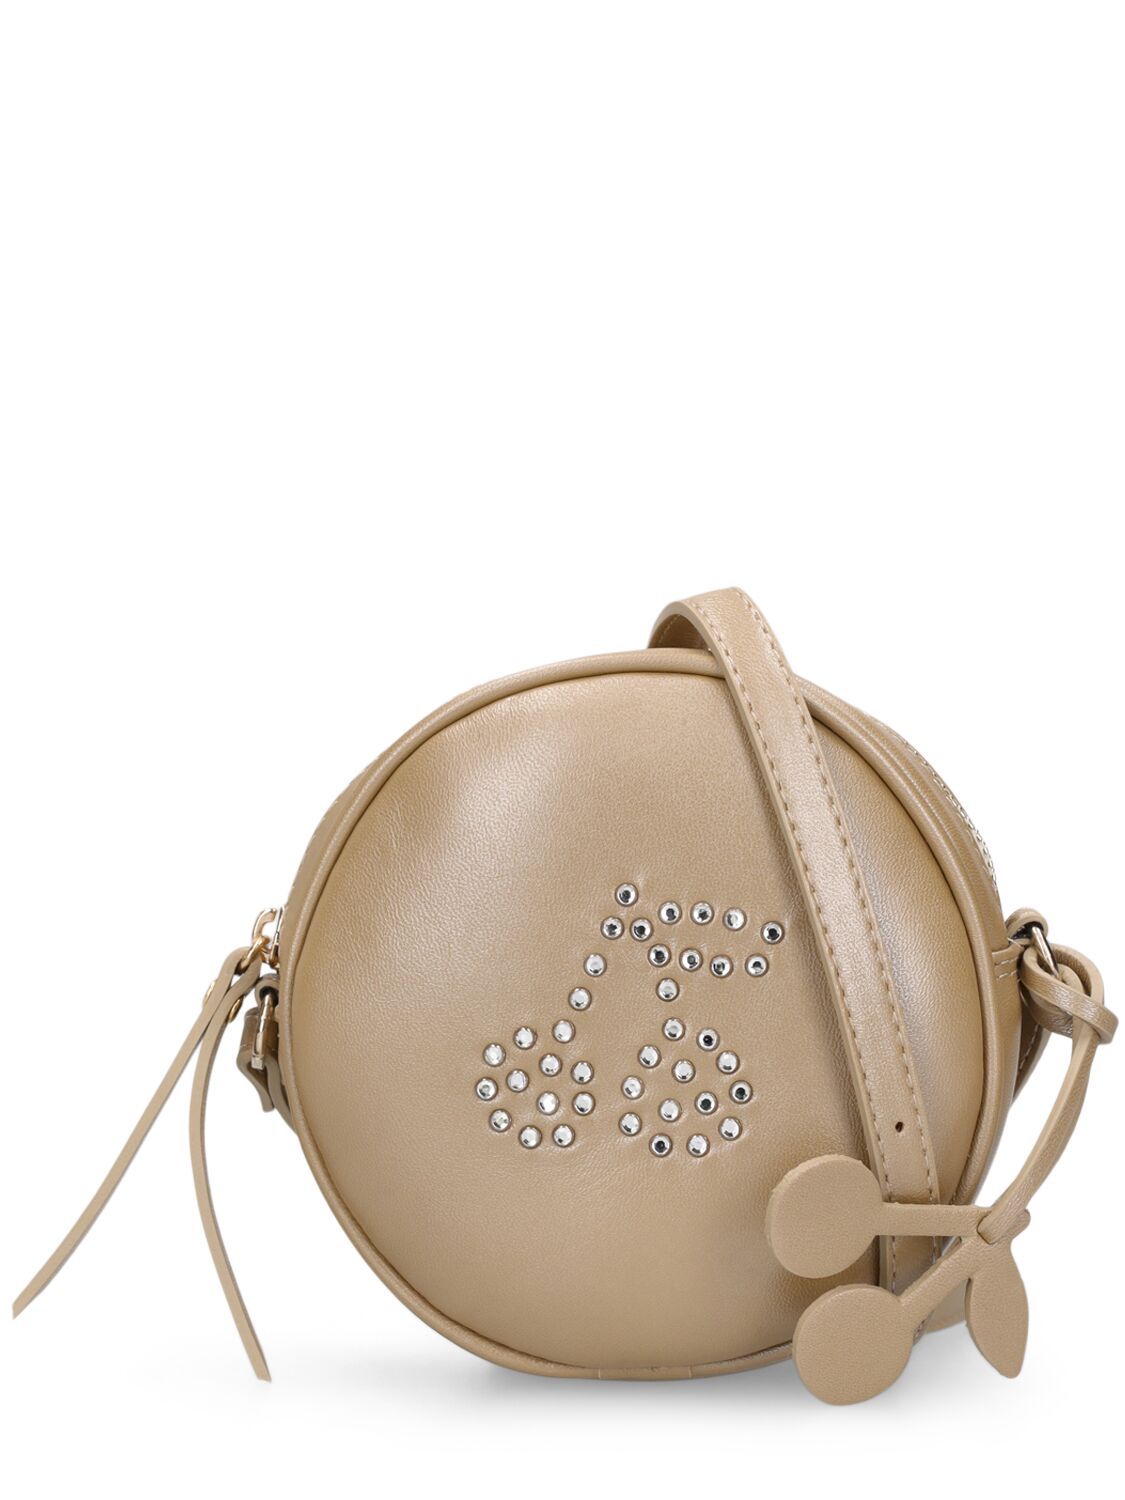 Image of Embellished Leather Shoulder Bag